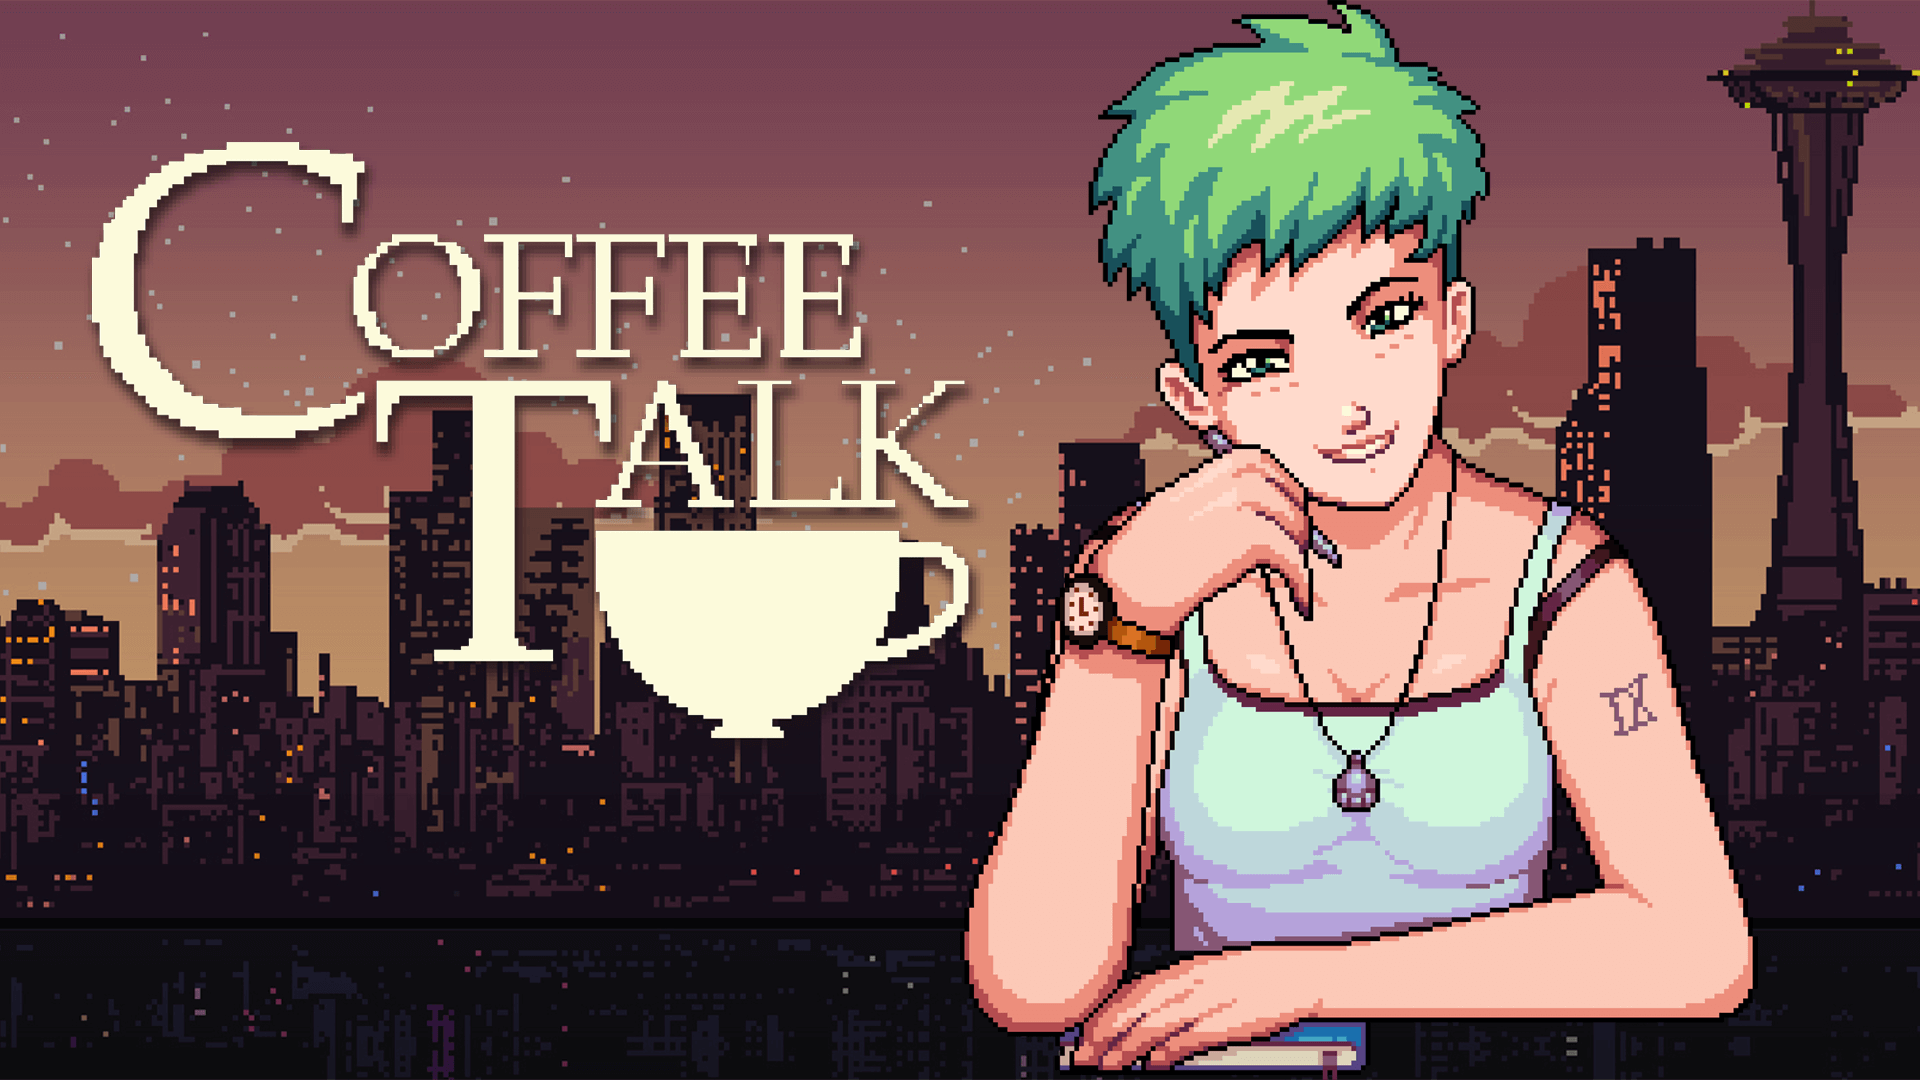 Coffee Talk